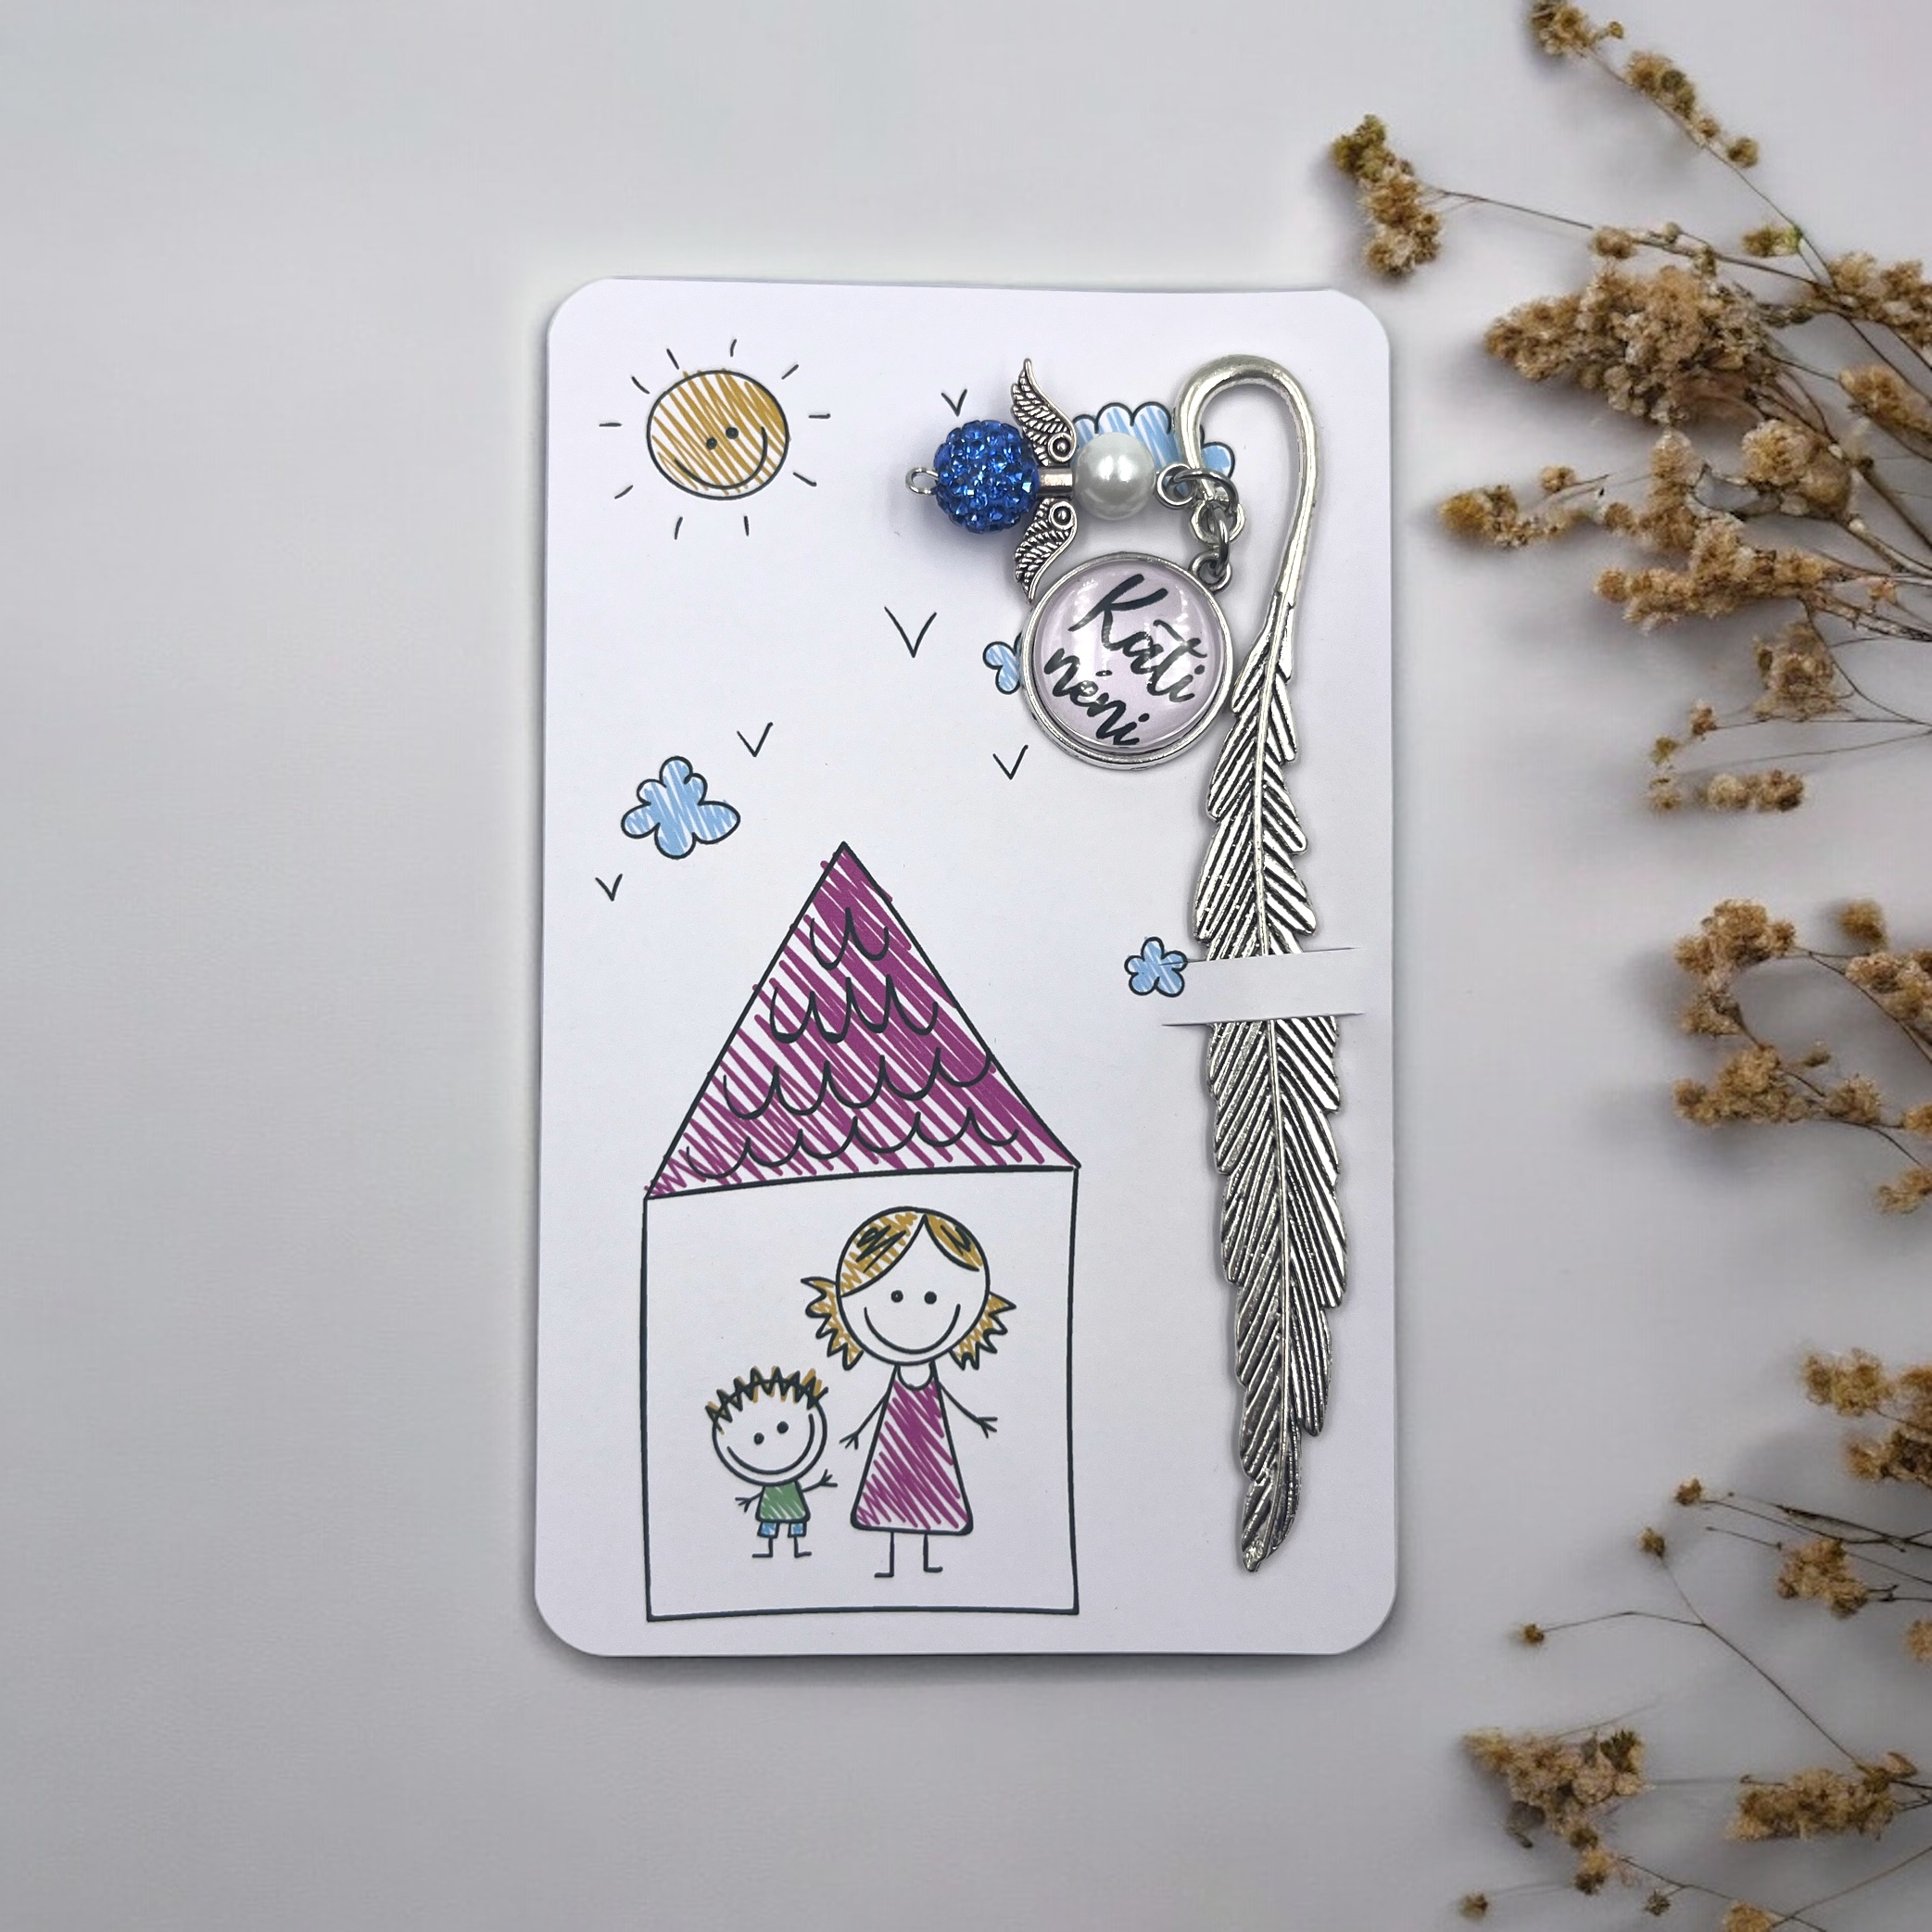 Üveglencsés könyvjelző saját rajzos ajándékkártyán - Óvó néninek, dajka néninek - tollas